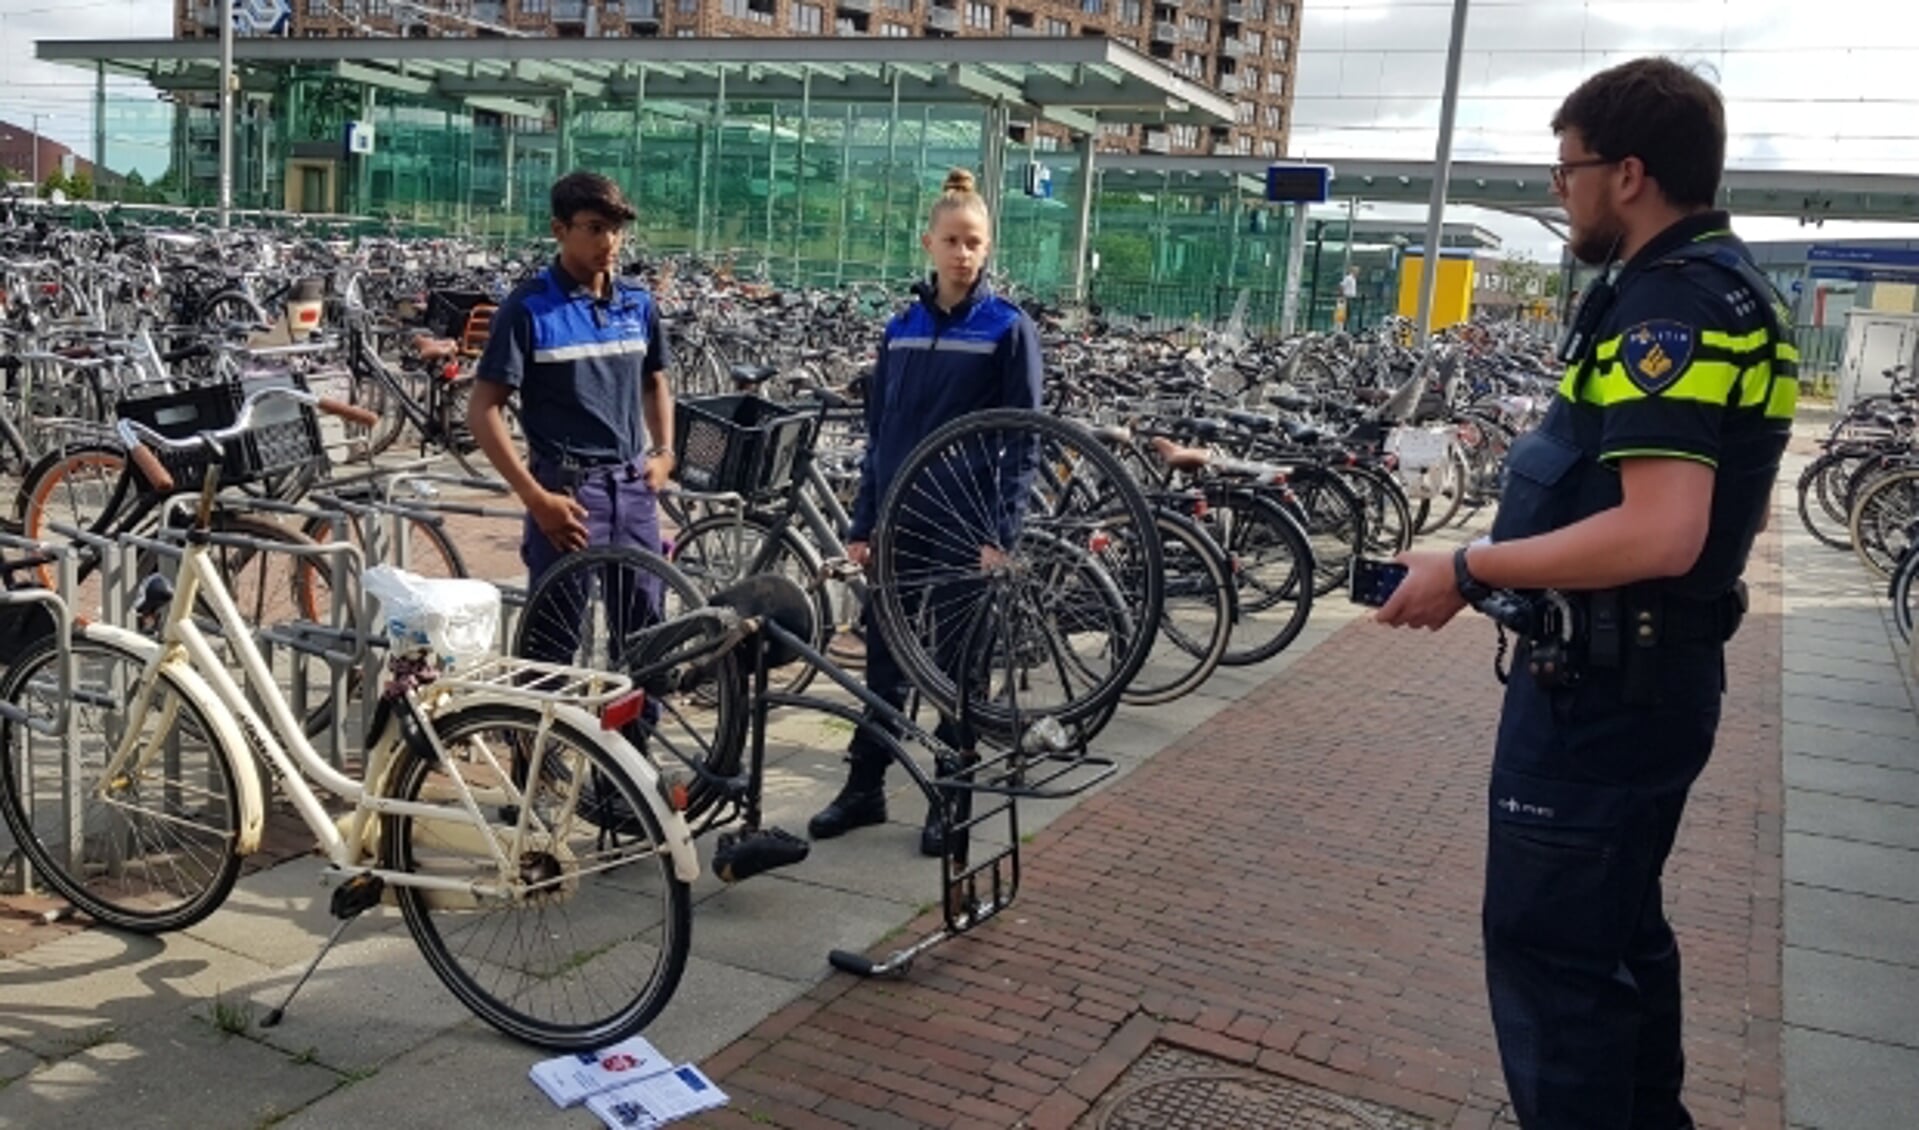 Studenten Handhaving, Toezicht en Veiligheid van mboRijnland gaan samen met de politie aan de slag.